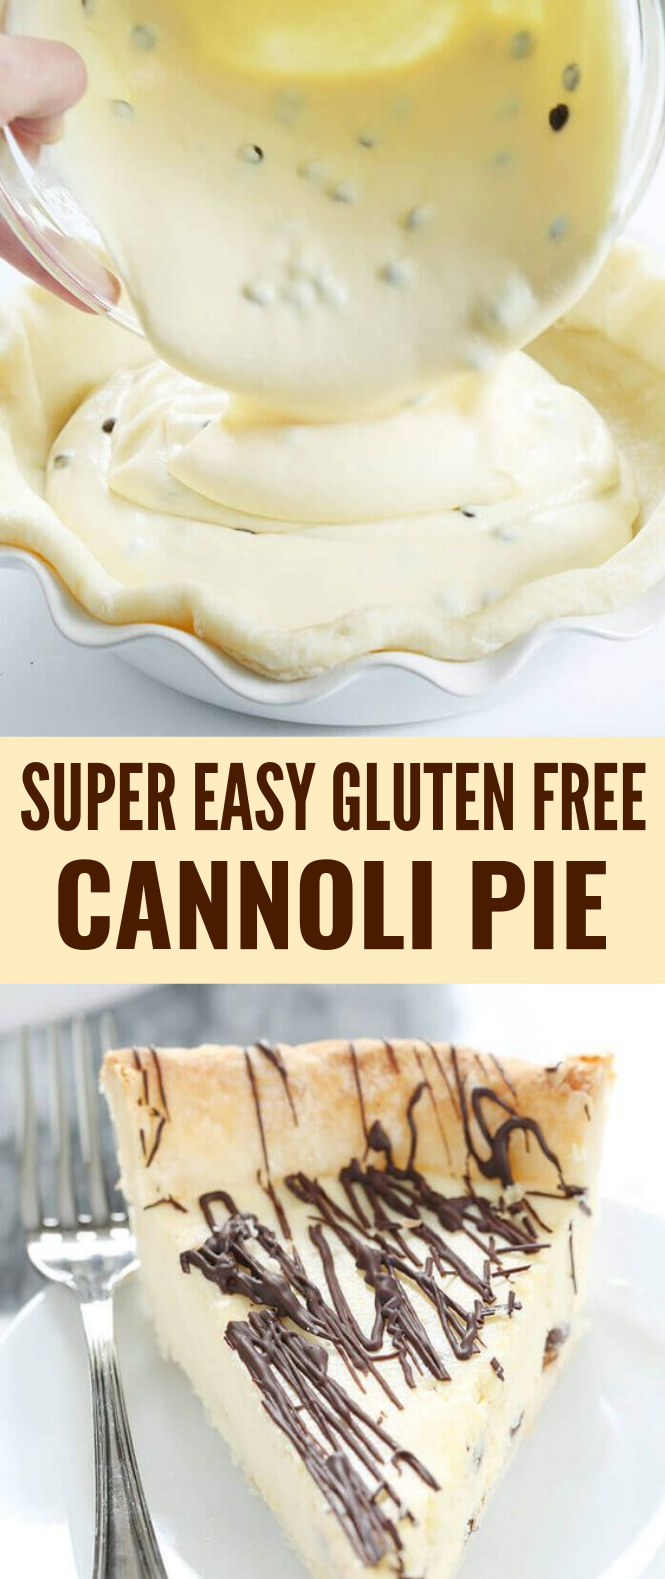 Super Easy Gluten Free Cannoli Pie #Dessert #Cookie